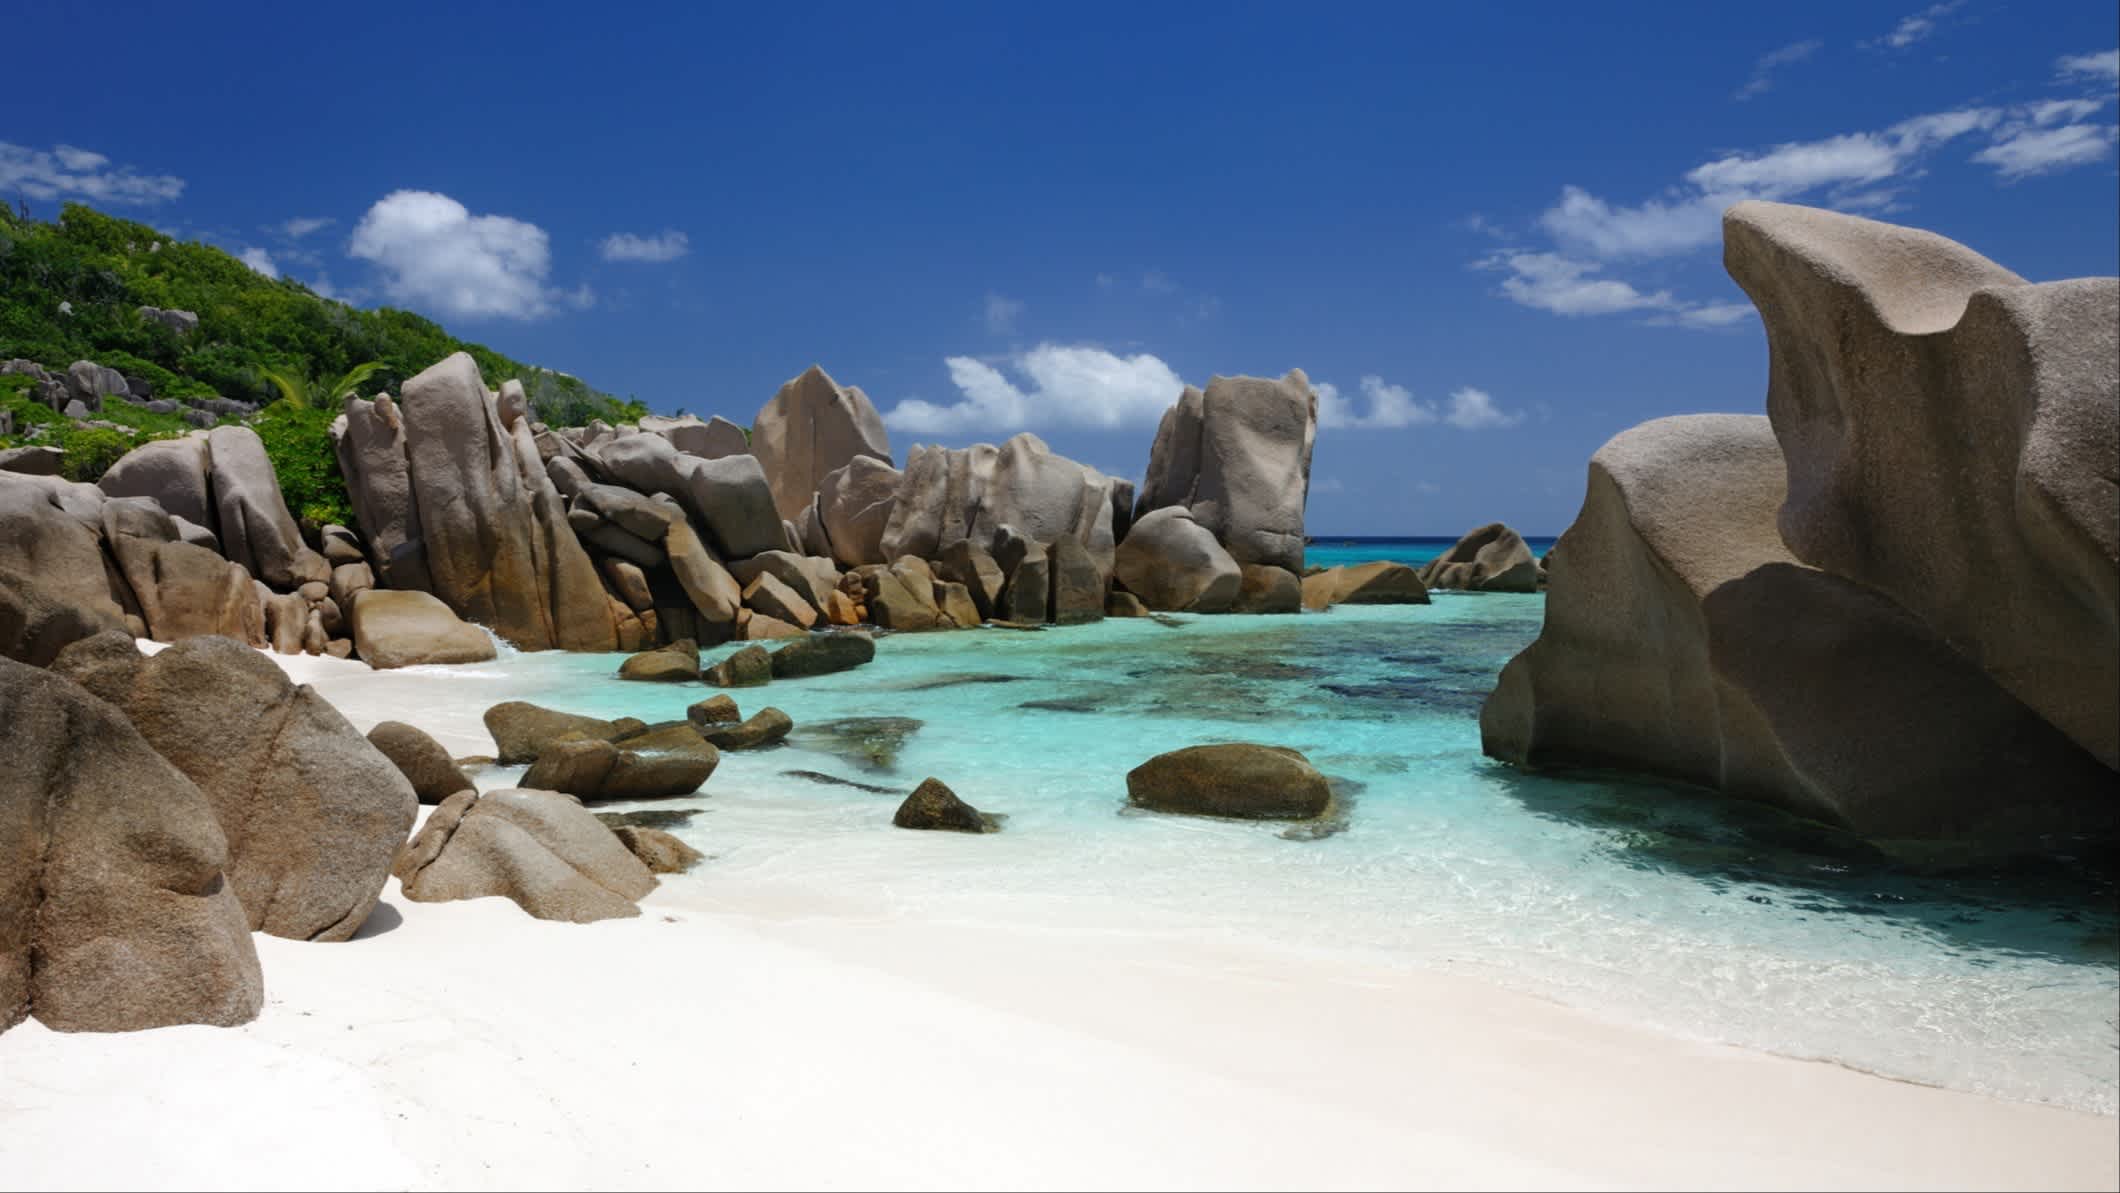 Die abgeschiedene Bucht von Anse Marron auf der Insel La Digue auf den Seychellen, bei sonnigem Wetter und mit den typischen Granitfelsen und kristallklarem Meereswasser im Bild.